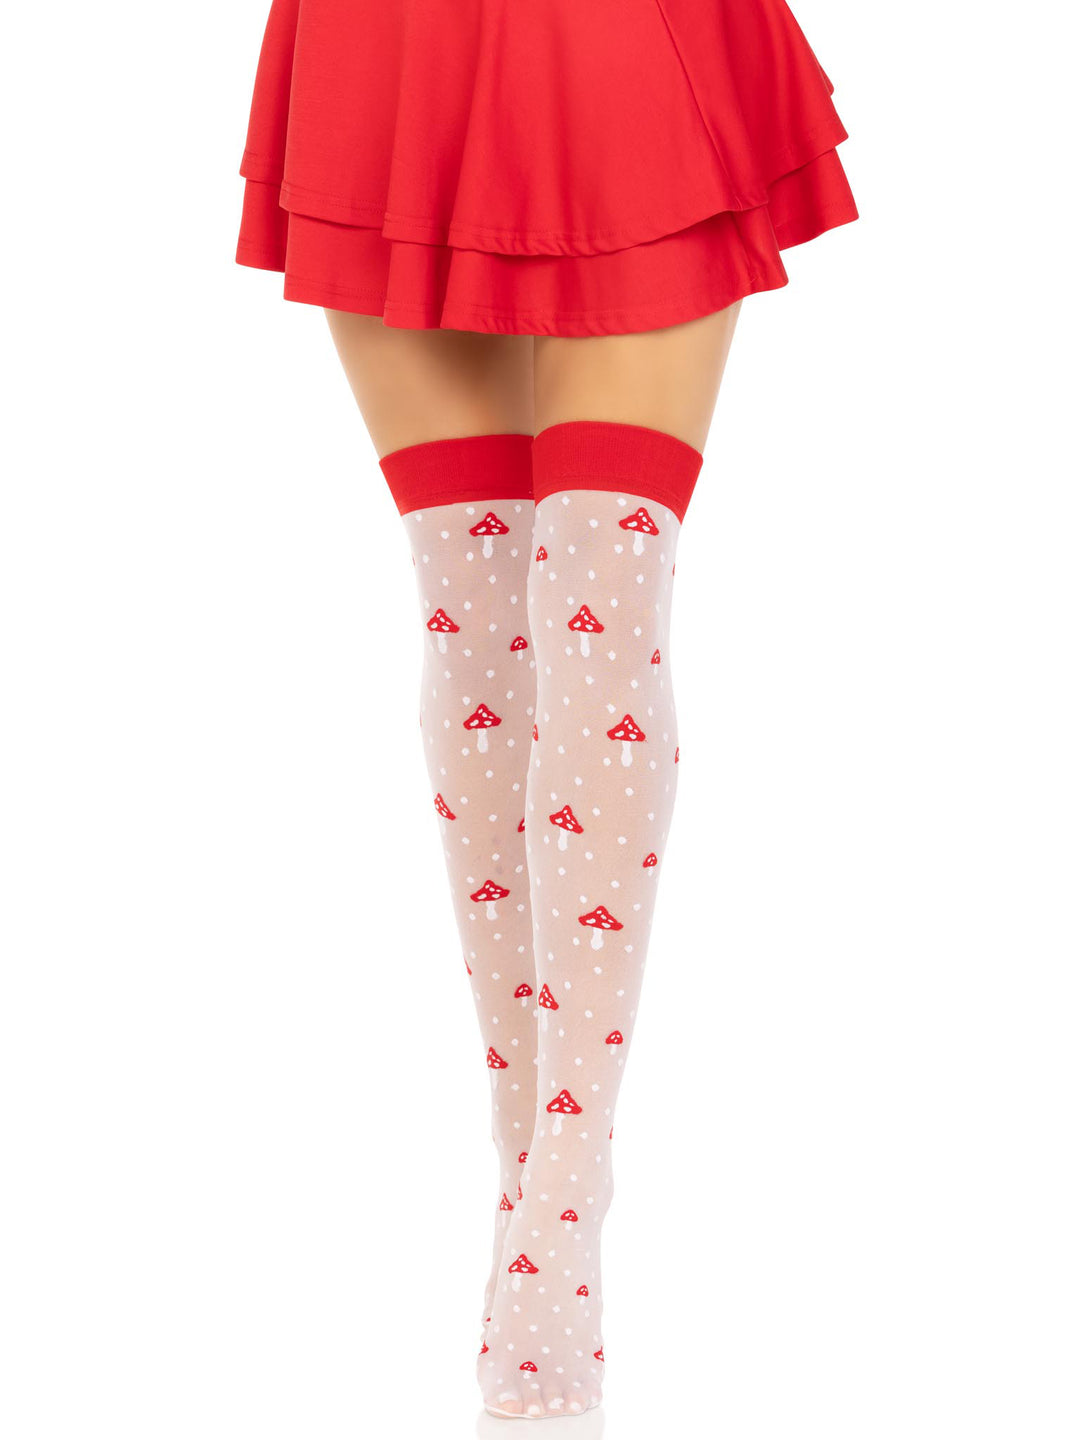 Polka Dot Mushroom Thigh High - One Size - White/red LA-6217WHRDOS